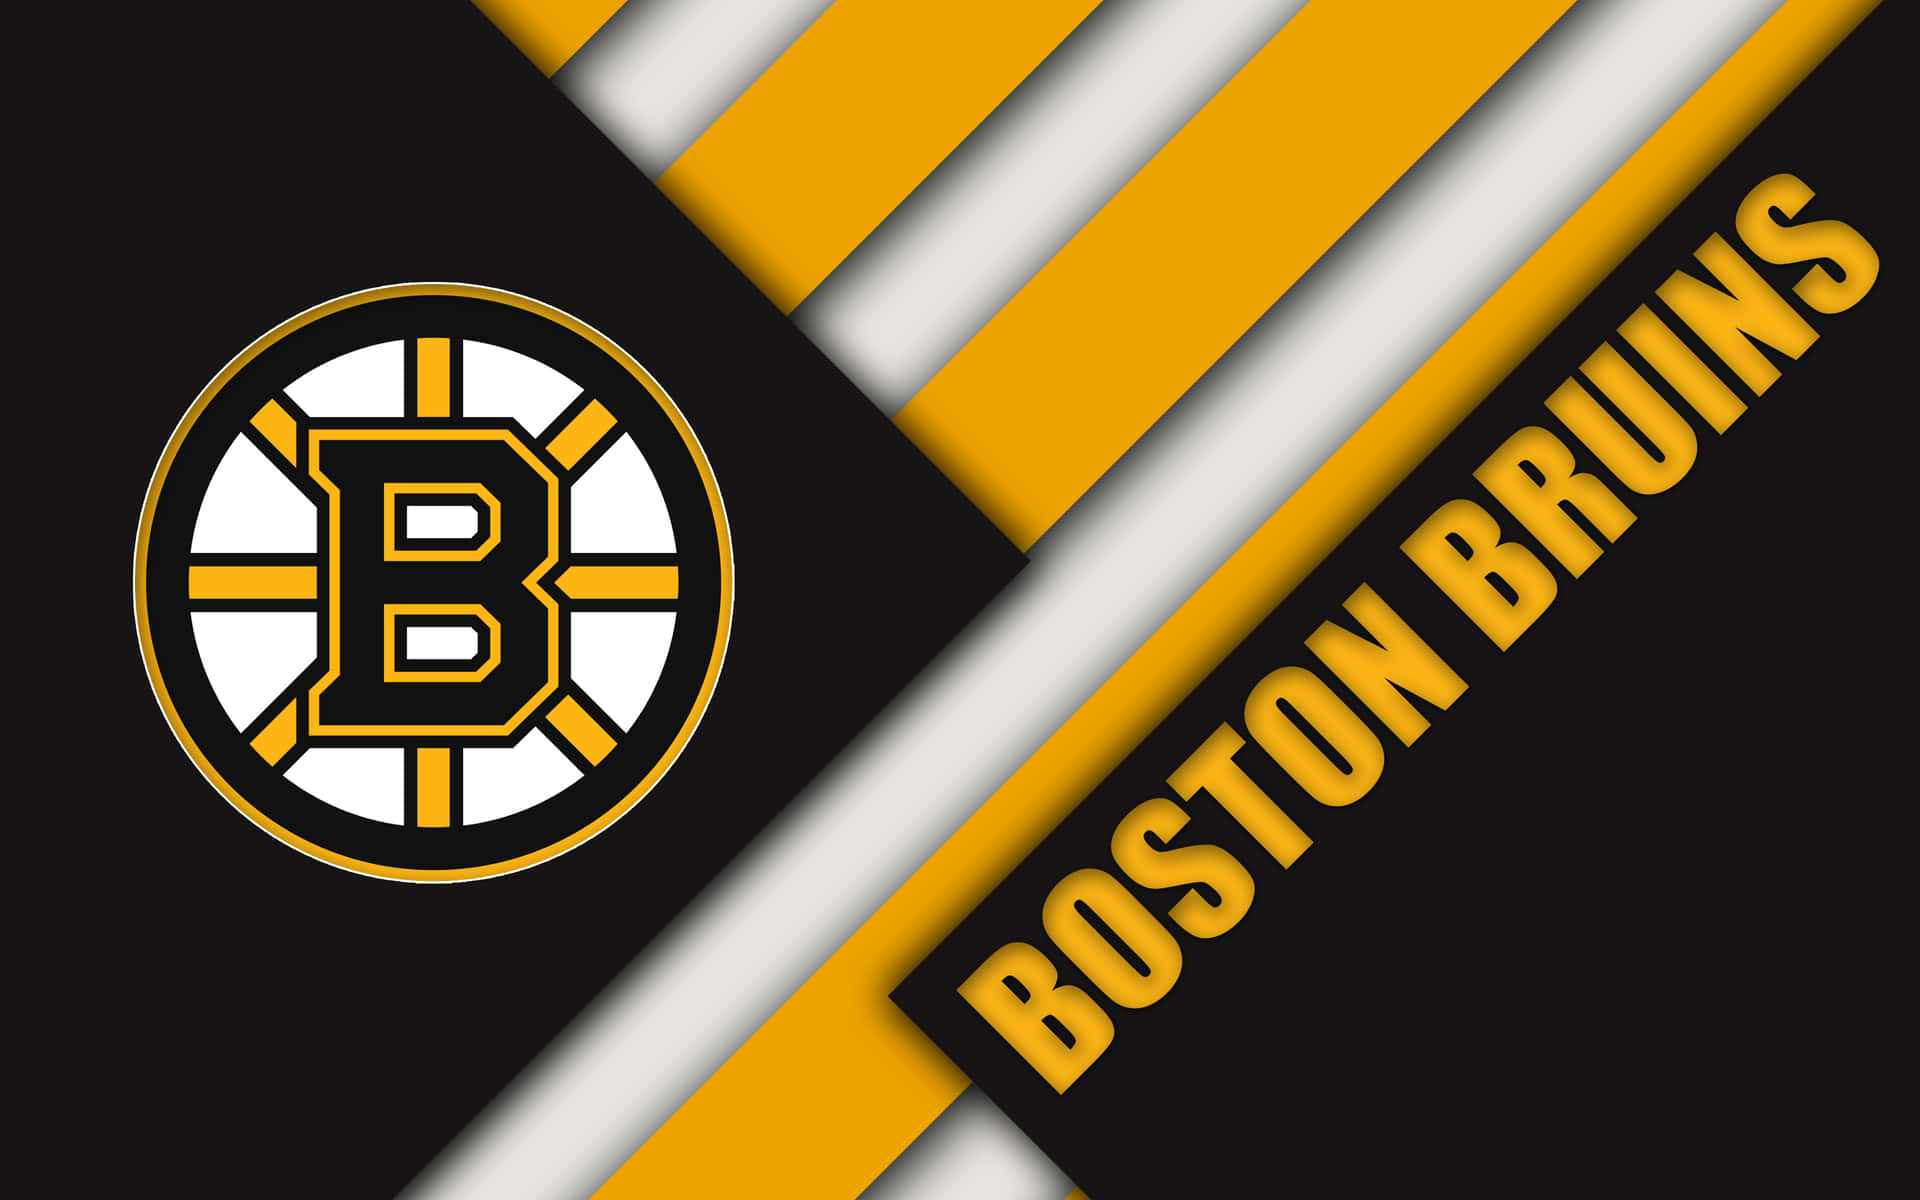 Aequipa Campeã Dos Boston Bruins